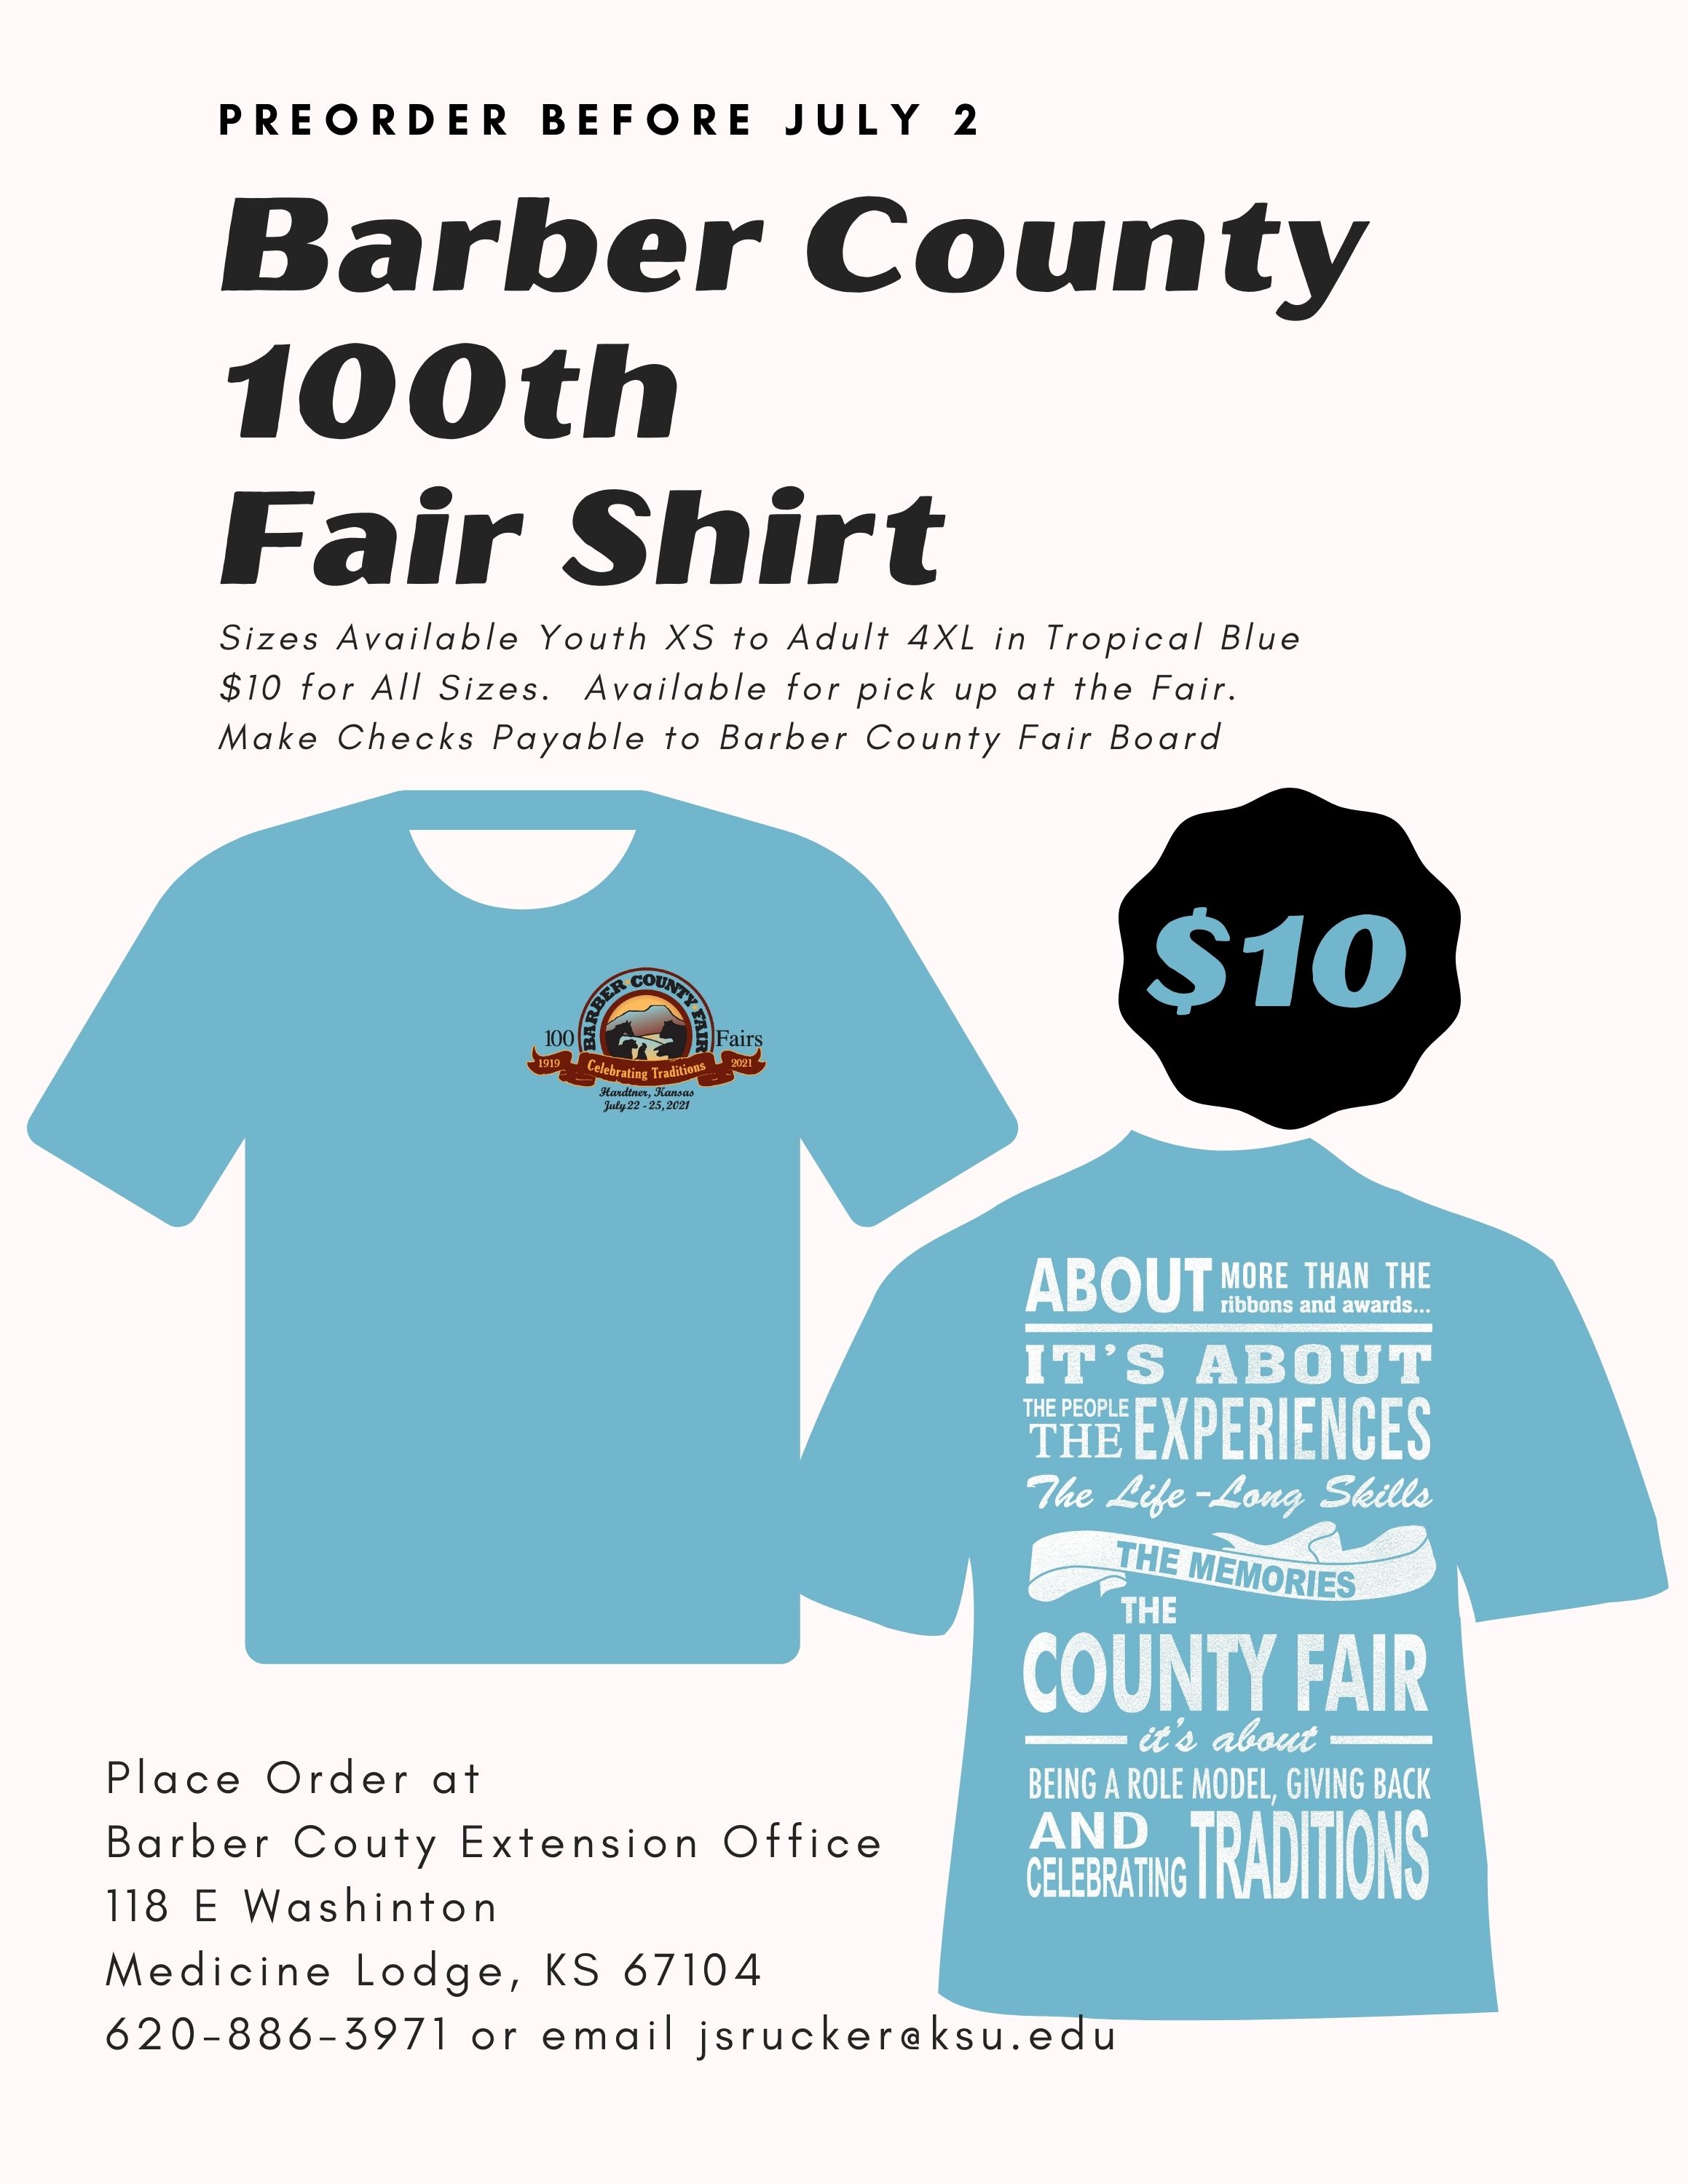 Fair Shirt Flyer